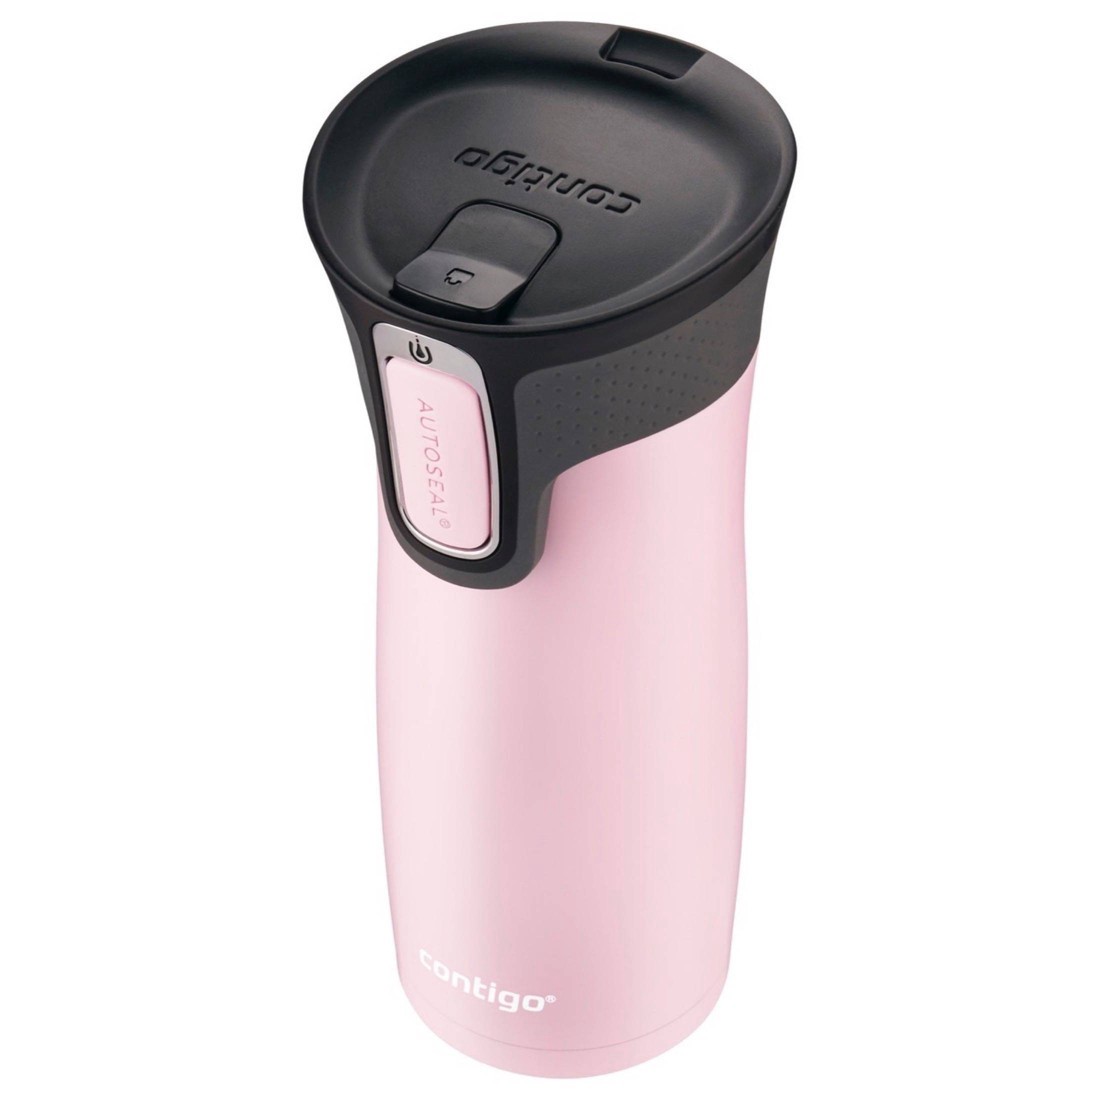 CONTIGO AUTOSEAL Travel Mug Lid Replacement Pink/Grey Silver Button